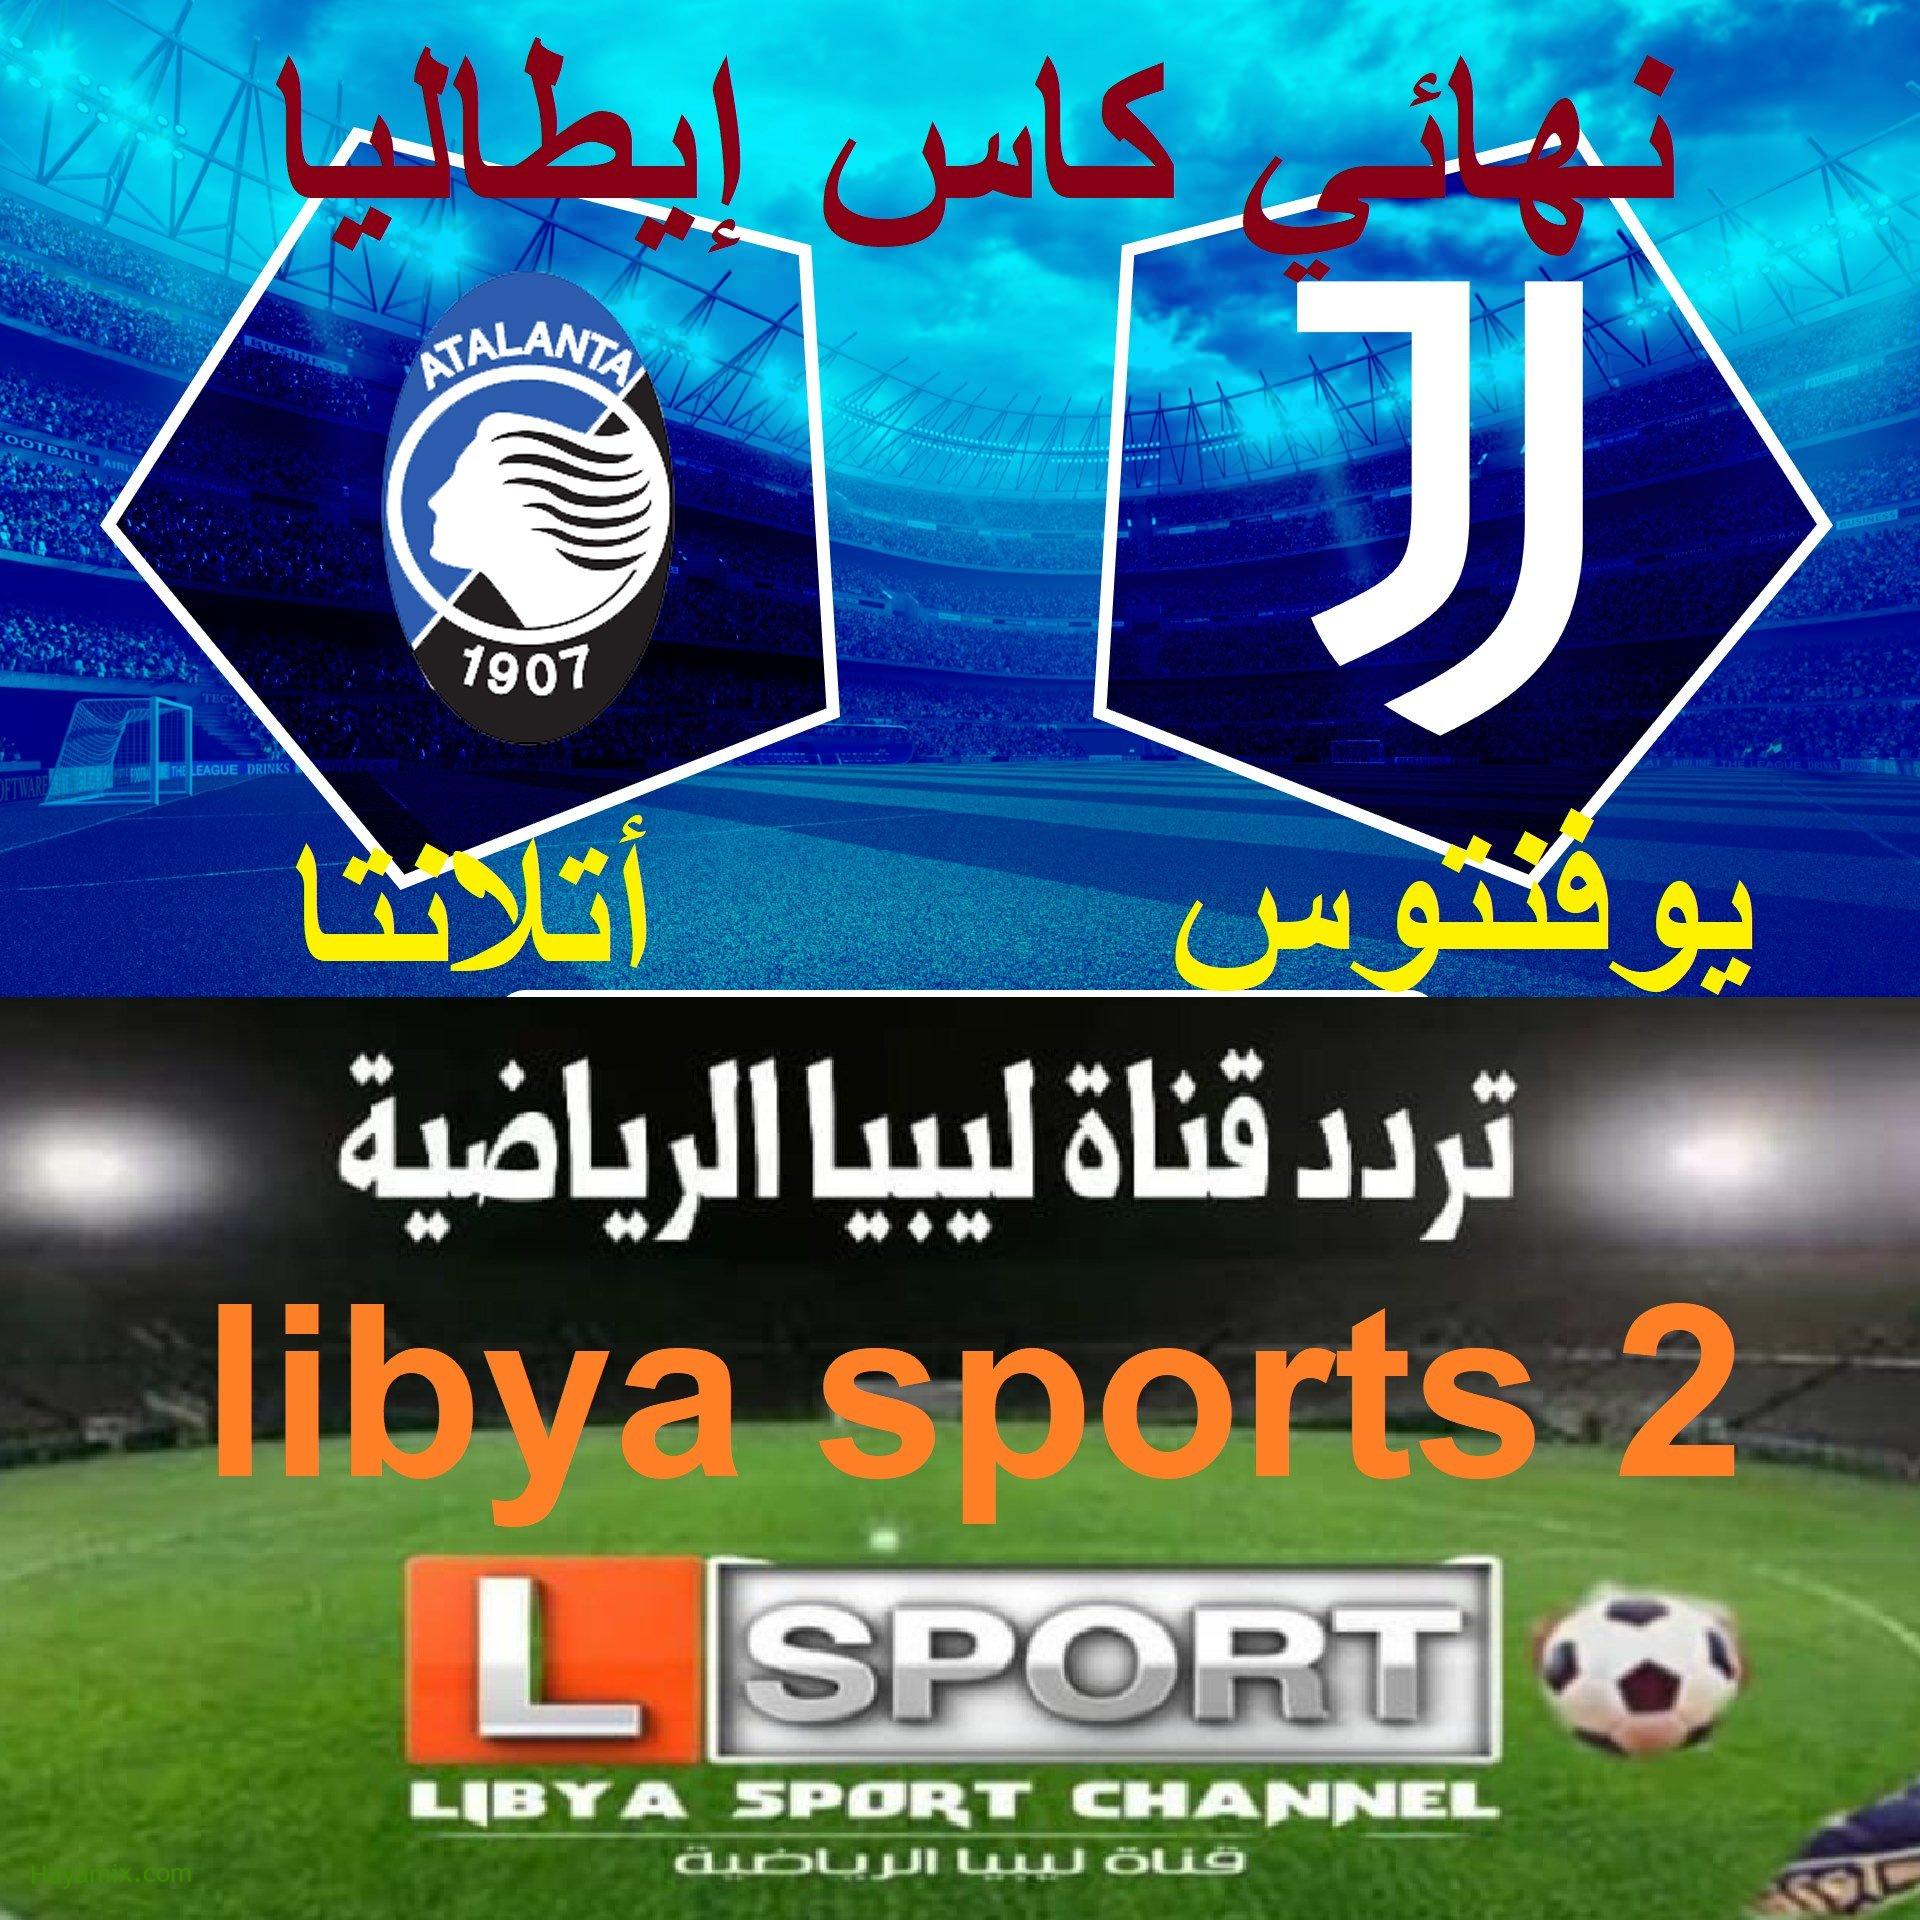 إشارة تردد قناة ليبيا الرياضية libya sports HD2 المجانية المفتوحة الناقلة مباراة يوفنتوس وأتلانتا